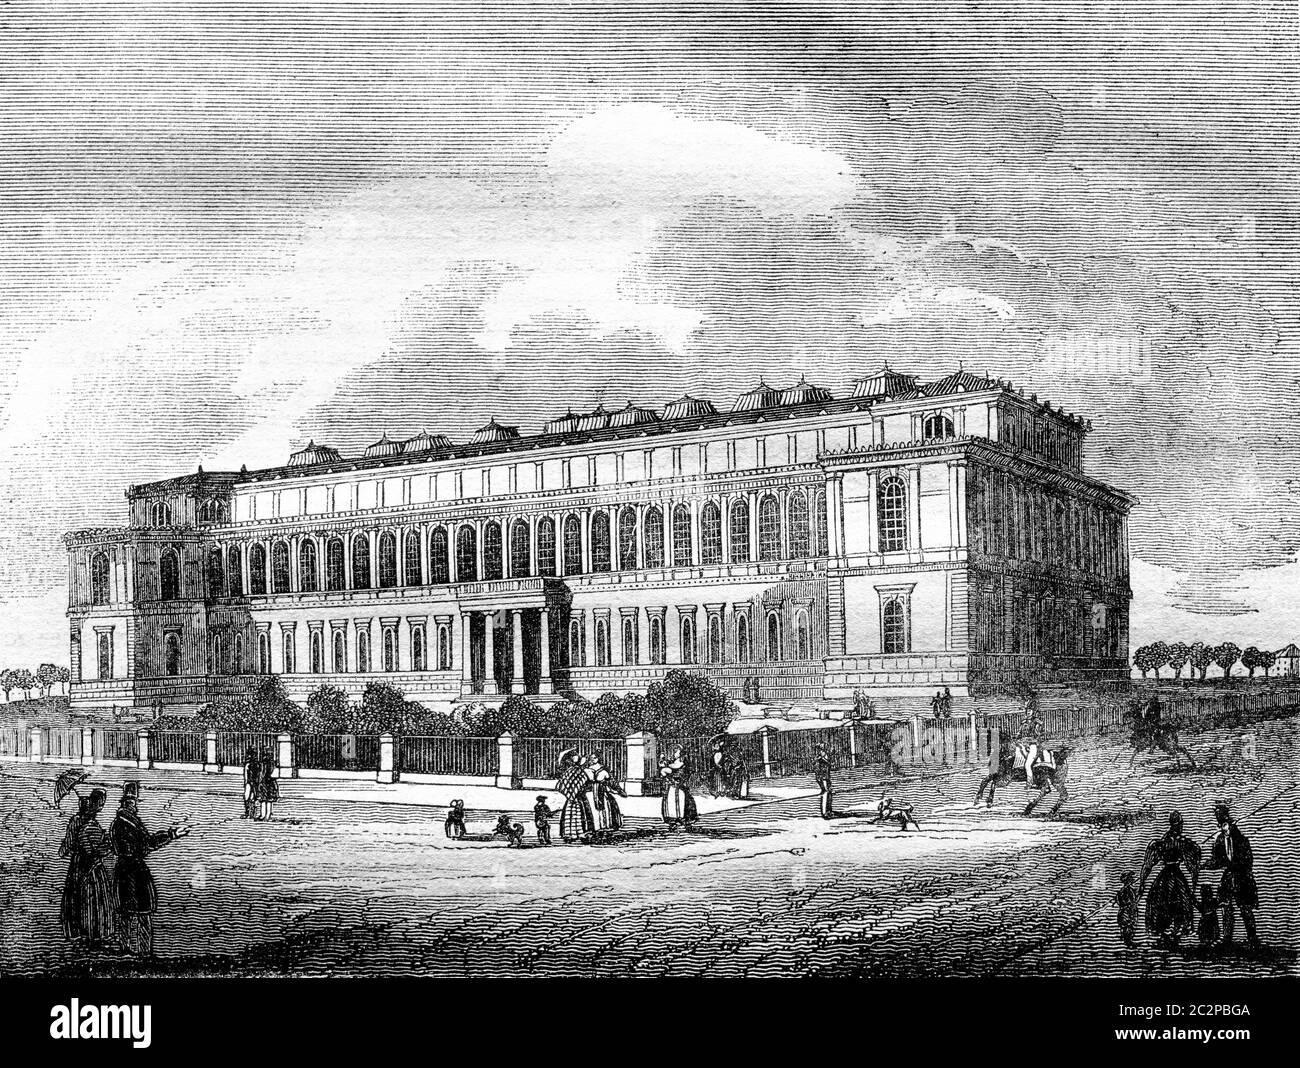 La Pinacothèque, musée de peinture, à Munich, illustration gravée d'époque. Magasin Pittoresque 1836. Banque D'Images